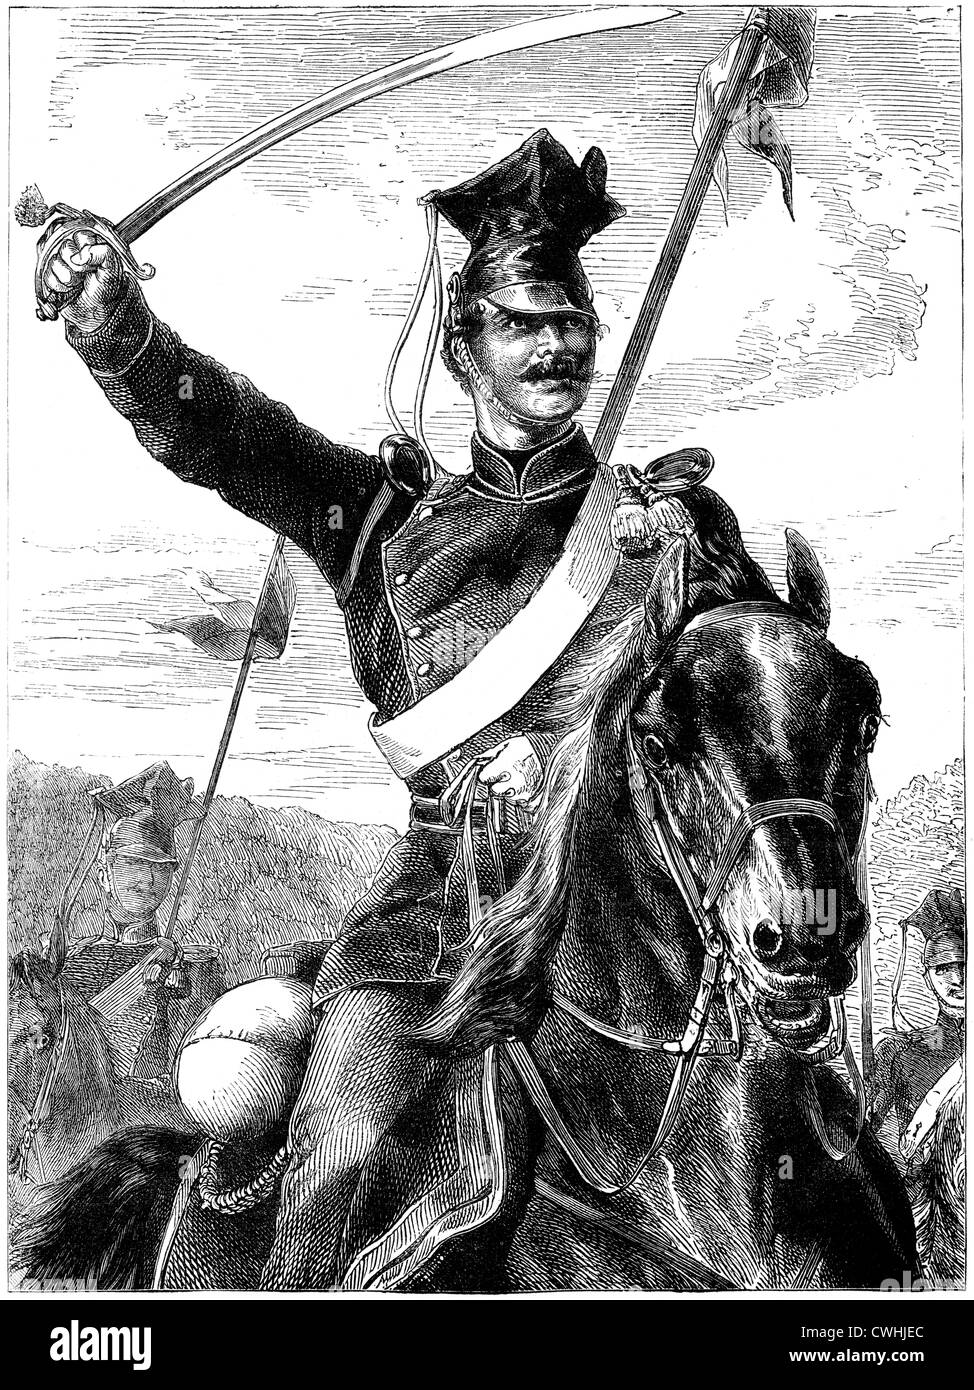 Eine preußische Ulanen aus dem Franco-preussischen Krieg. Ein Ulanen war eine leichte Kavallerie bewaffnet mit Lanzen, Säbel und Pistolen. Stockfoto